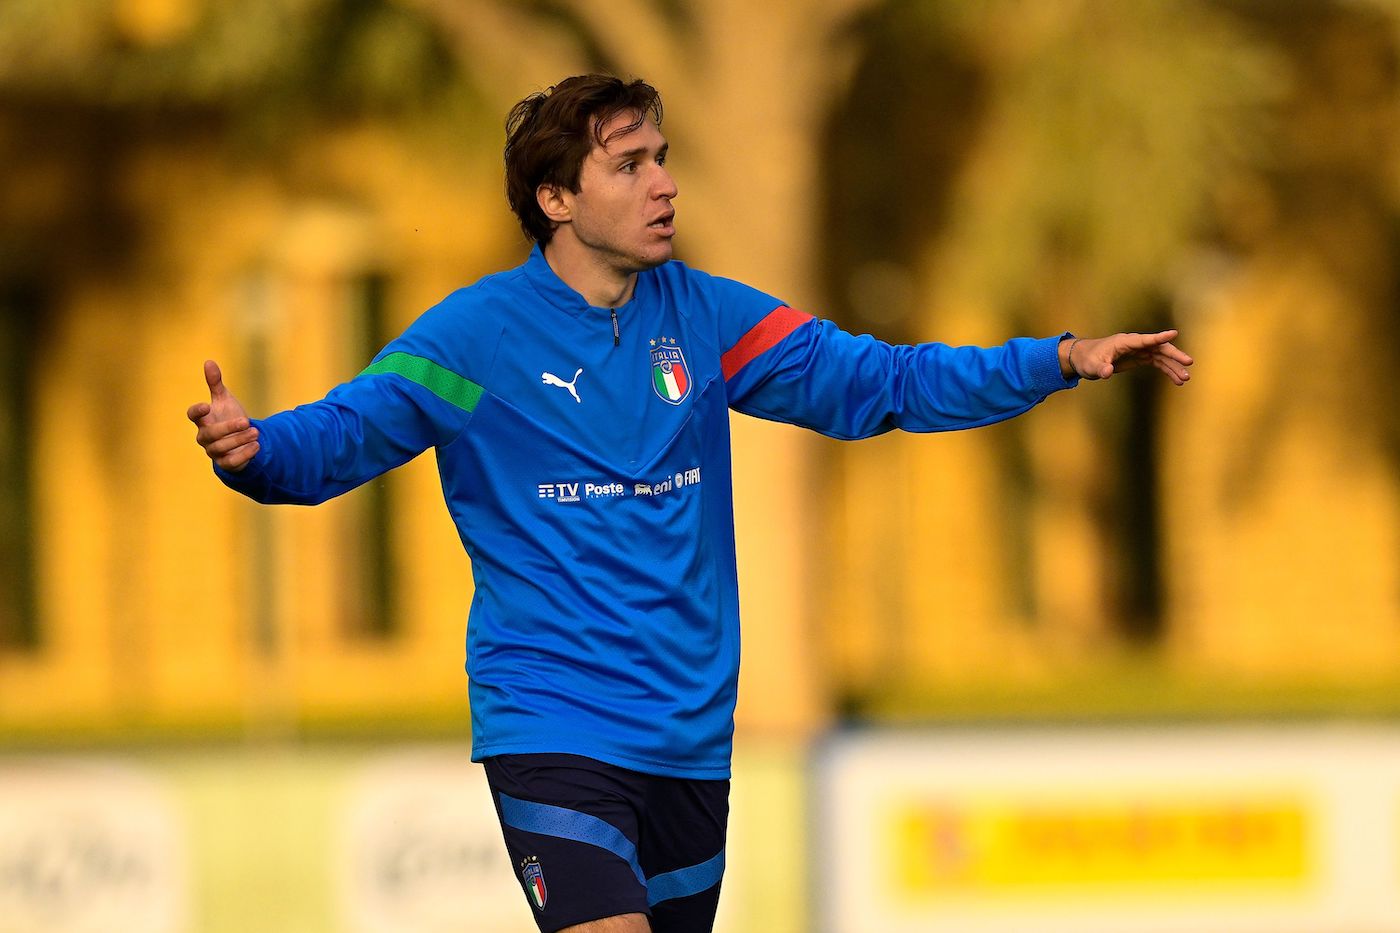 Nazionale, tegola per Mancini: infortunio Chiesa in Inter-Juventus. Le condizioni